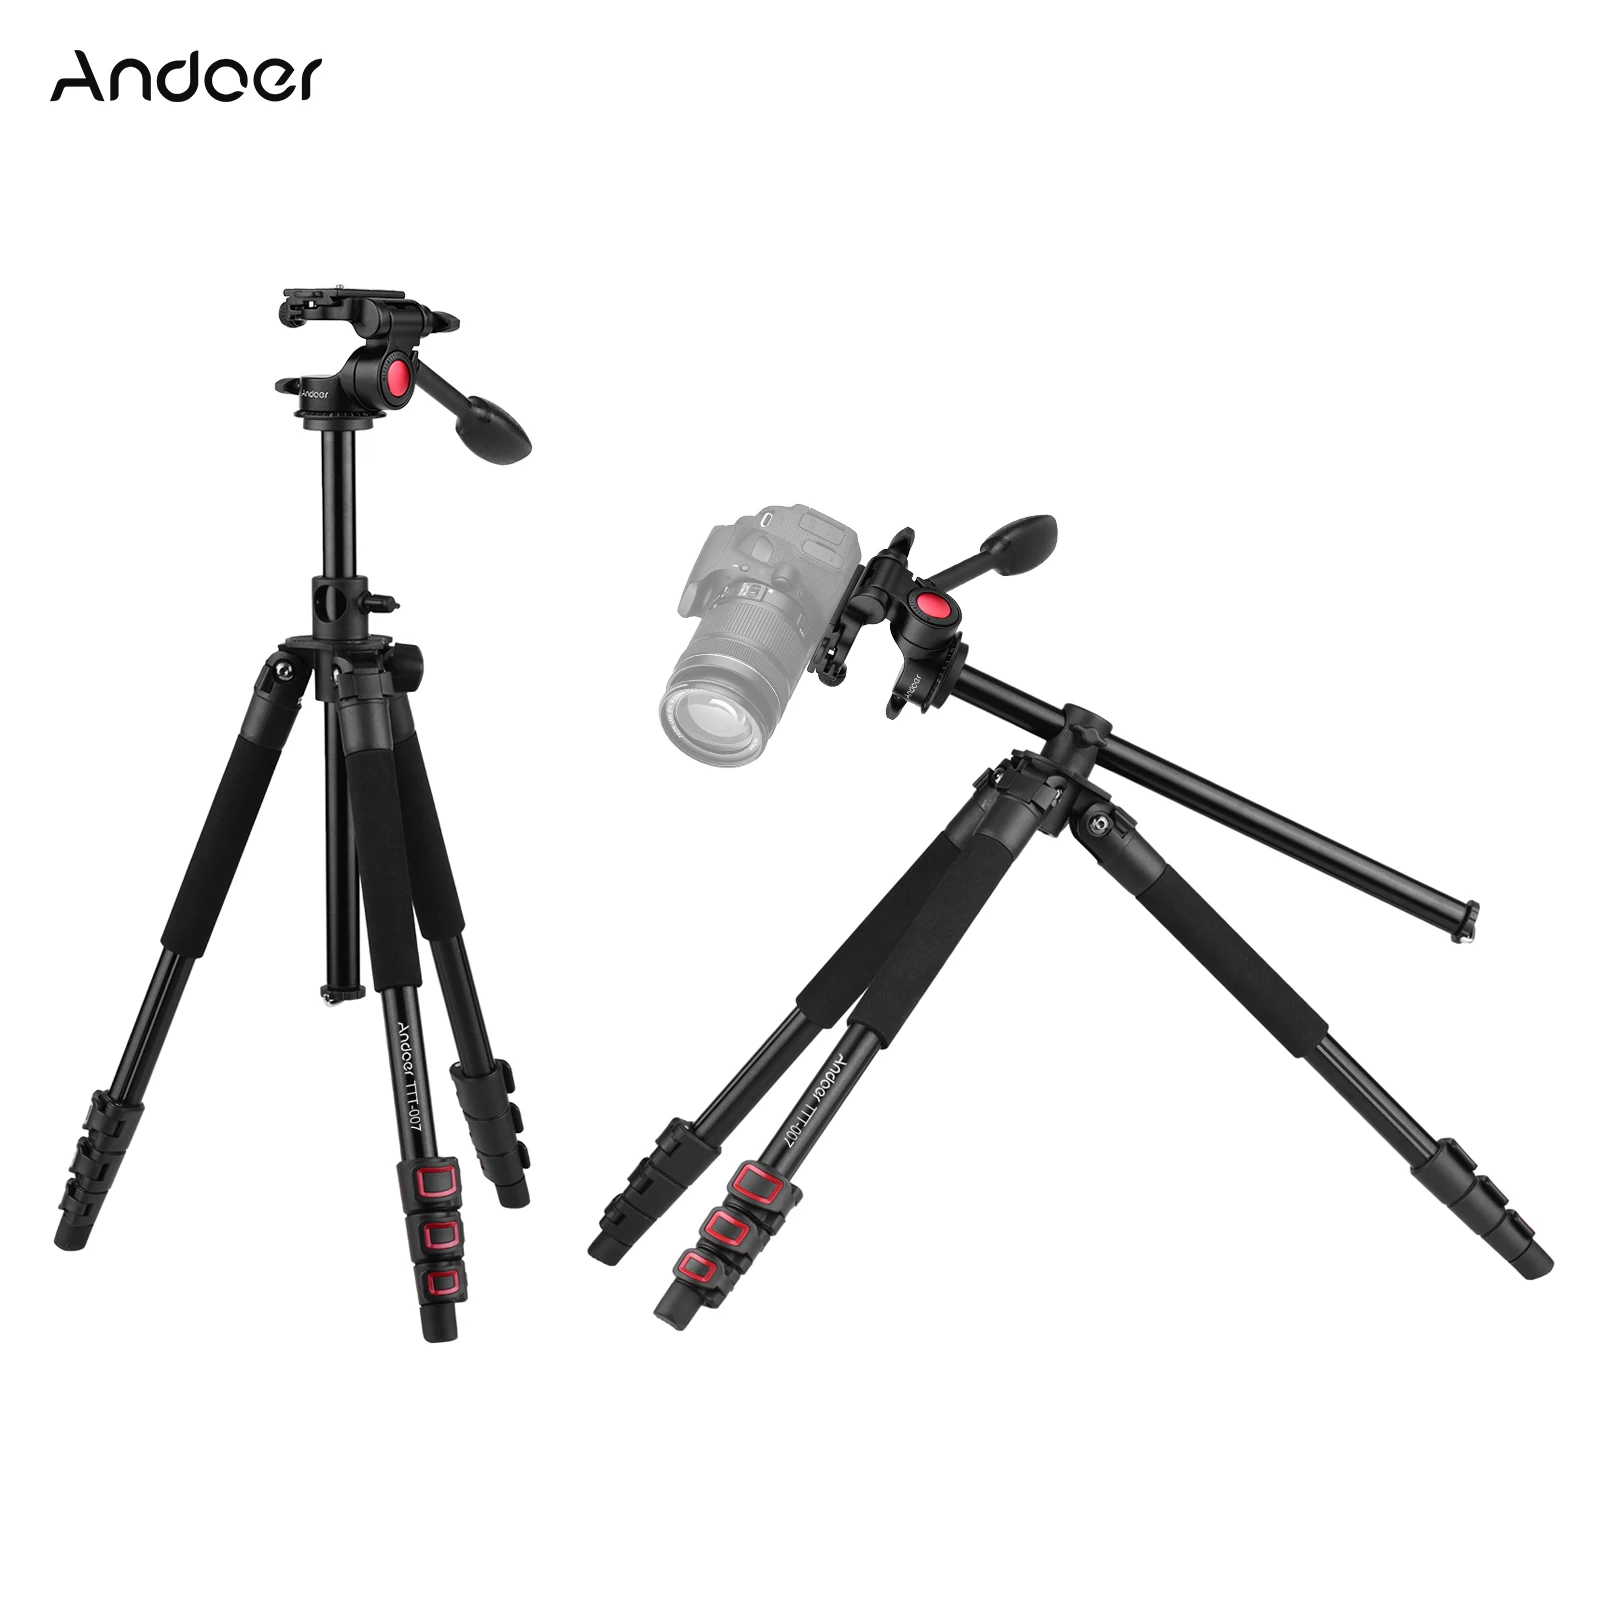 

Штатив Andoer для видеокамеры, выдвижной, TTT-007 см, из алюминиевого сплава, с 3-сторонним амортизирующим креплением для DSLR-камеры ILDC, нагрузка 8 кг